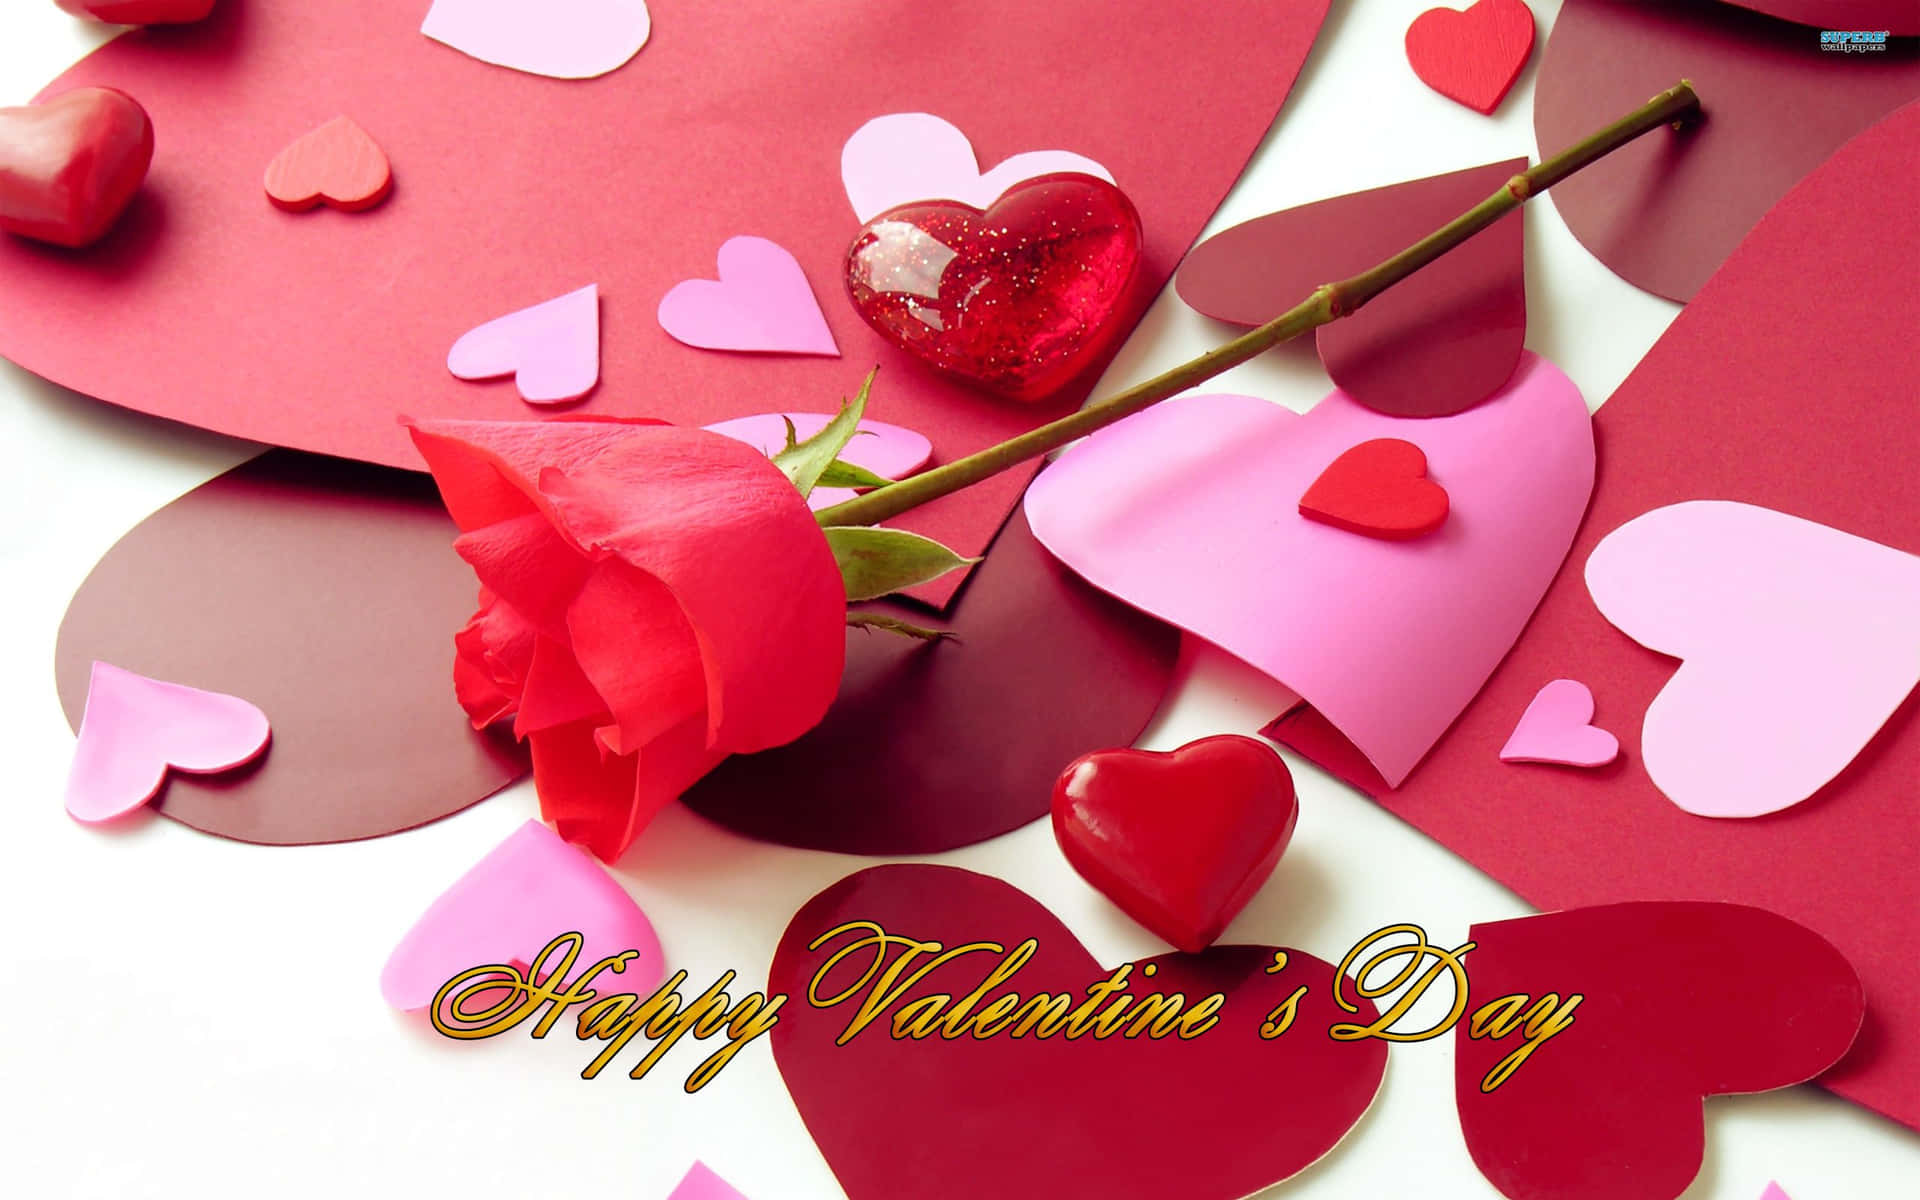 Zeigensie Liebe Und Wertschätzung Für Ihre Lieben An Diesem Valentinstag!